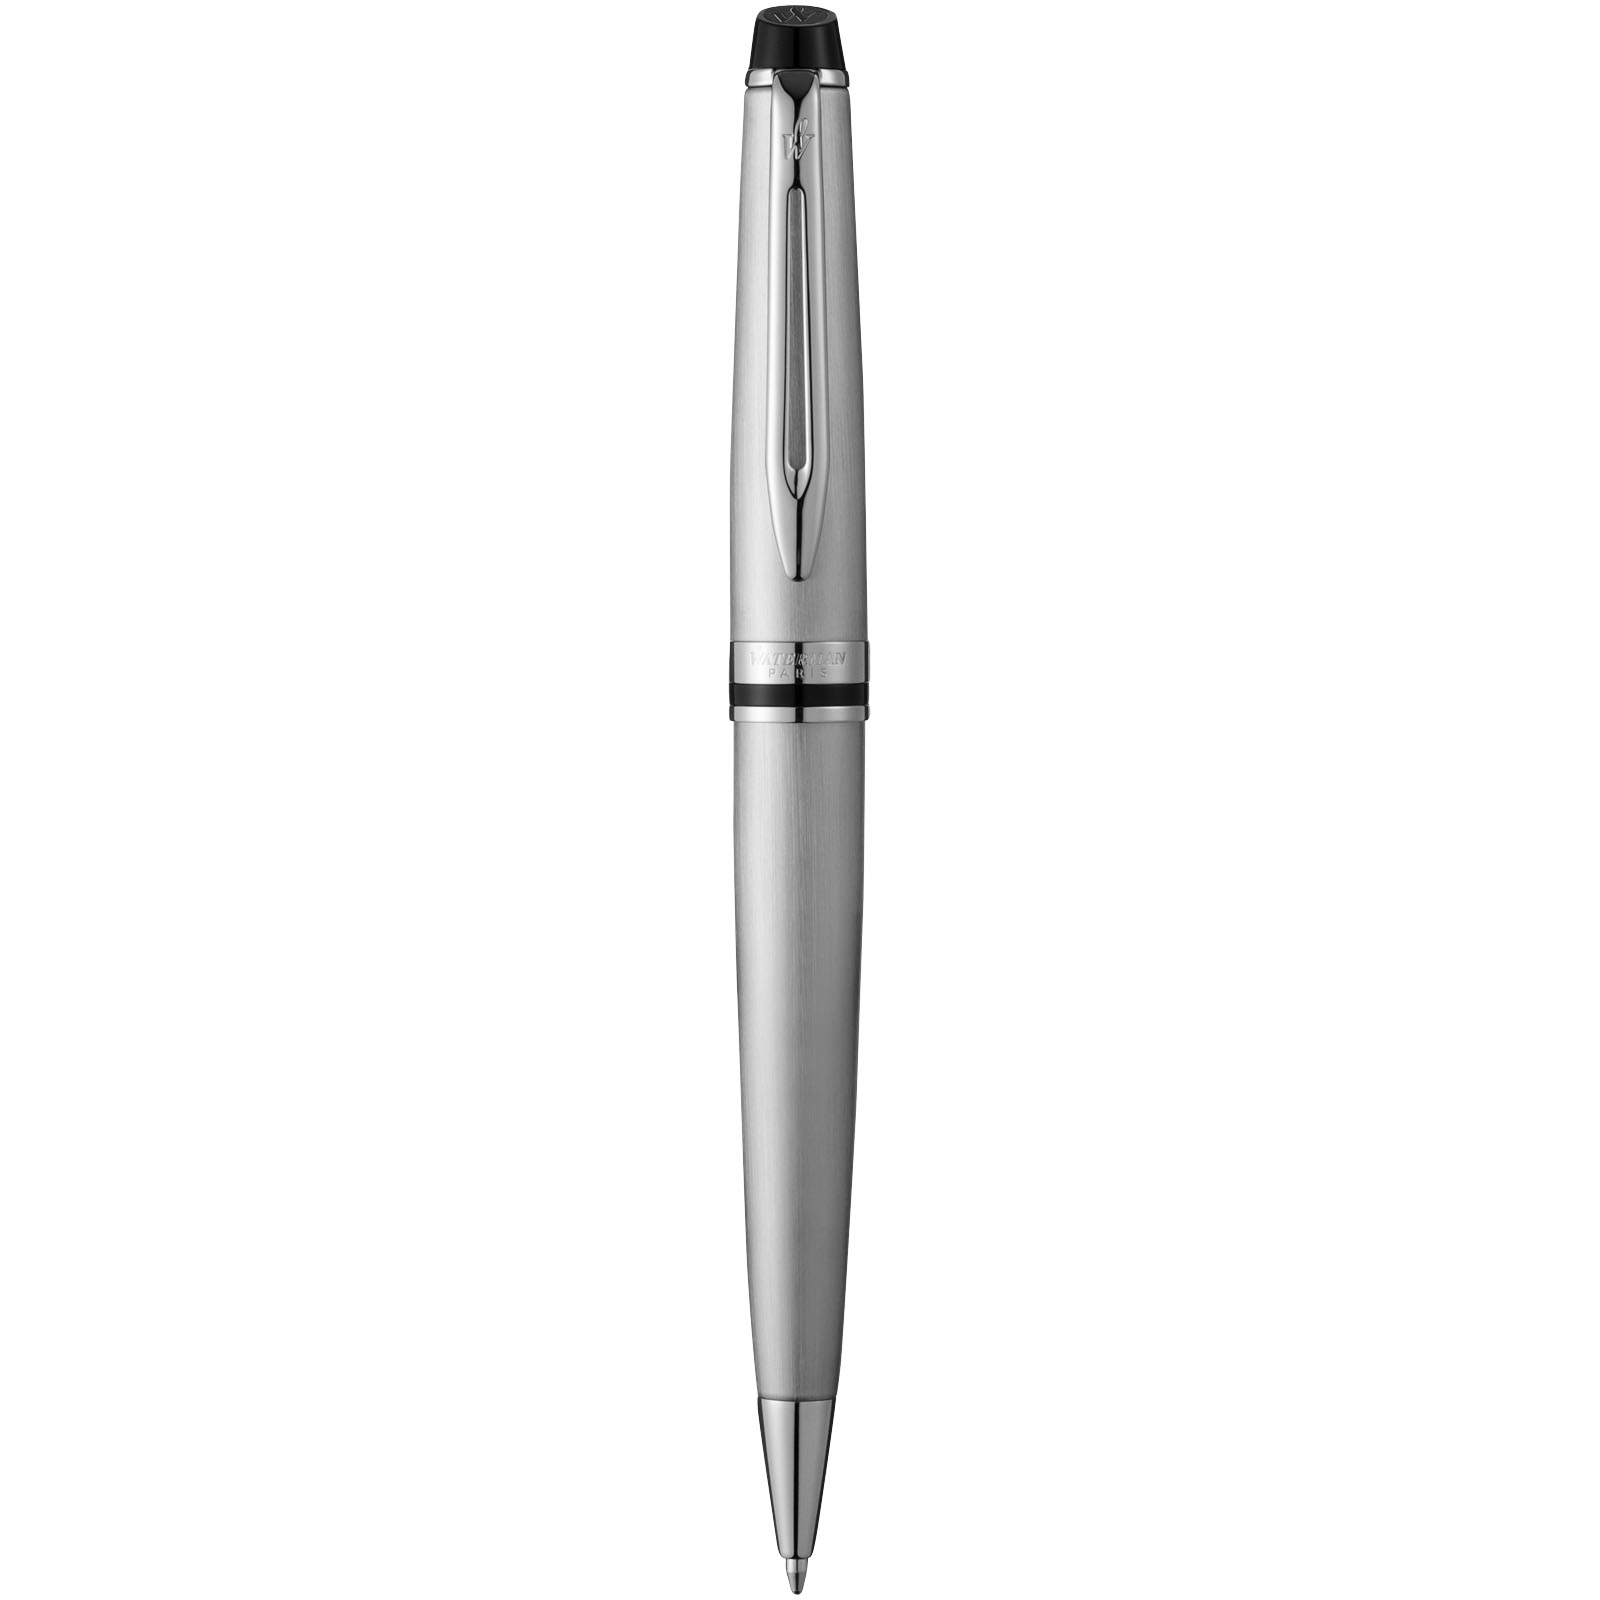 Expert ballpoint pen